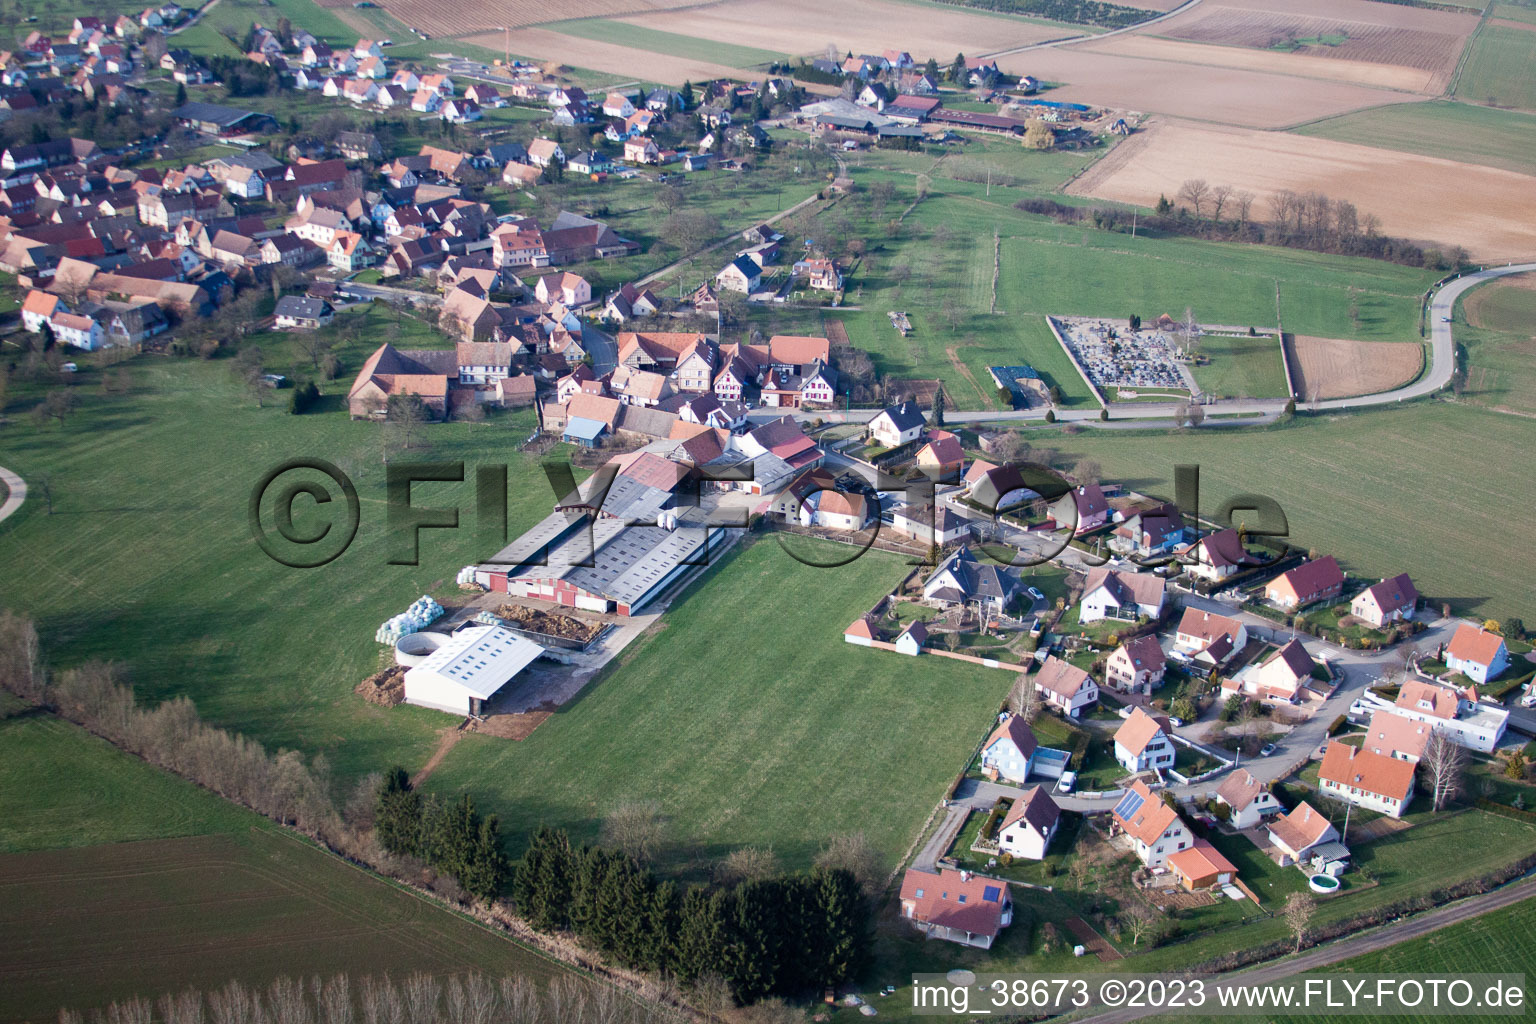 Mietesheim im Bundesland Bas-Rhin, Frankreich von oben gesehen